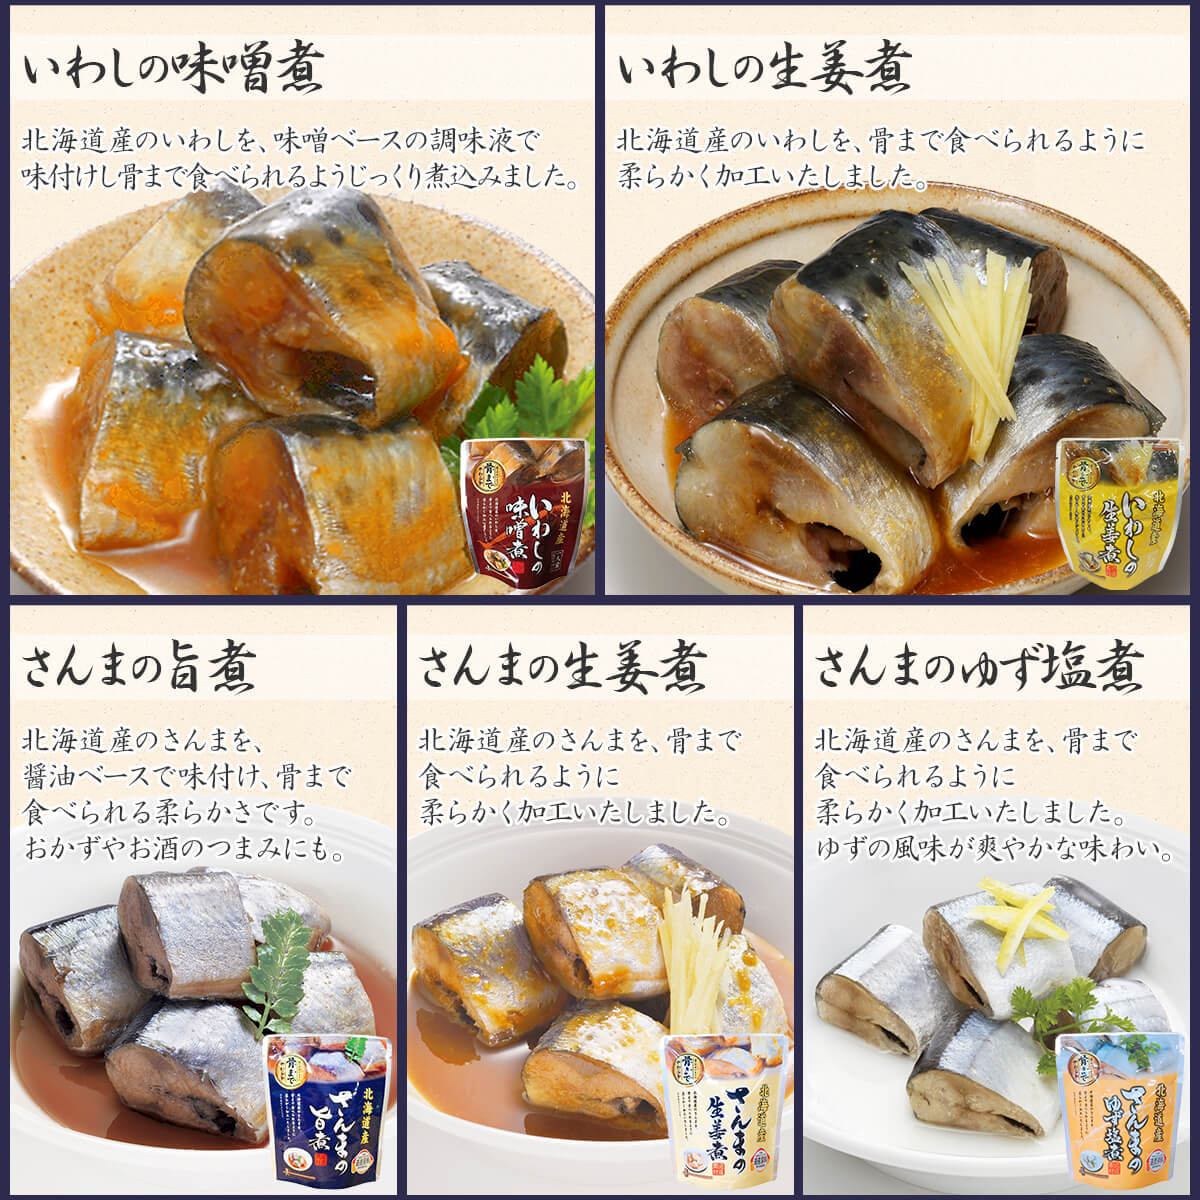 1122円 【91%OFF!】 骨まで柔らか煮魚セット 20食セット